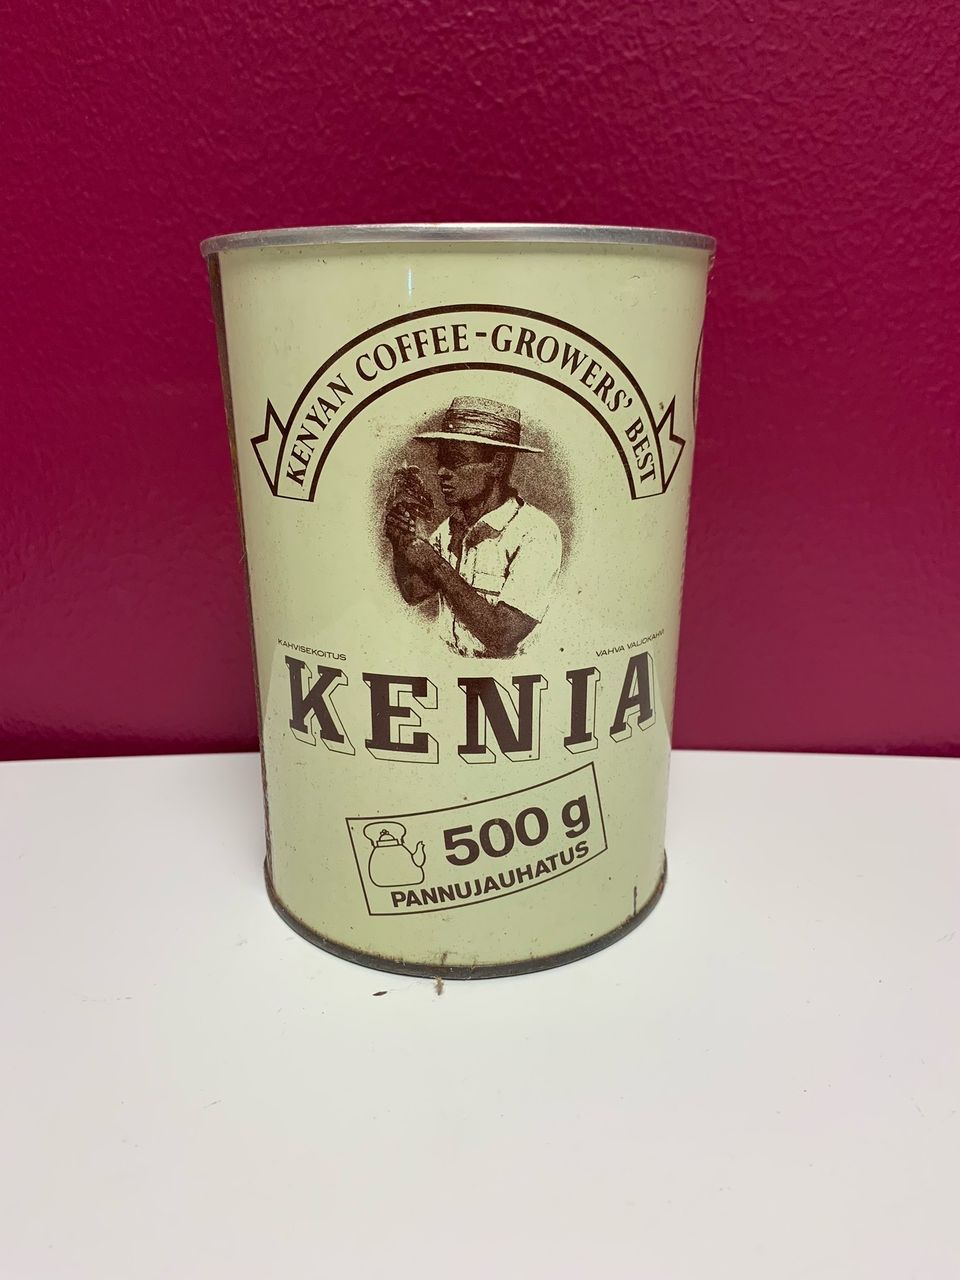 Vanha Kenia-kahvipurkki